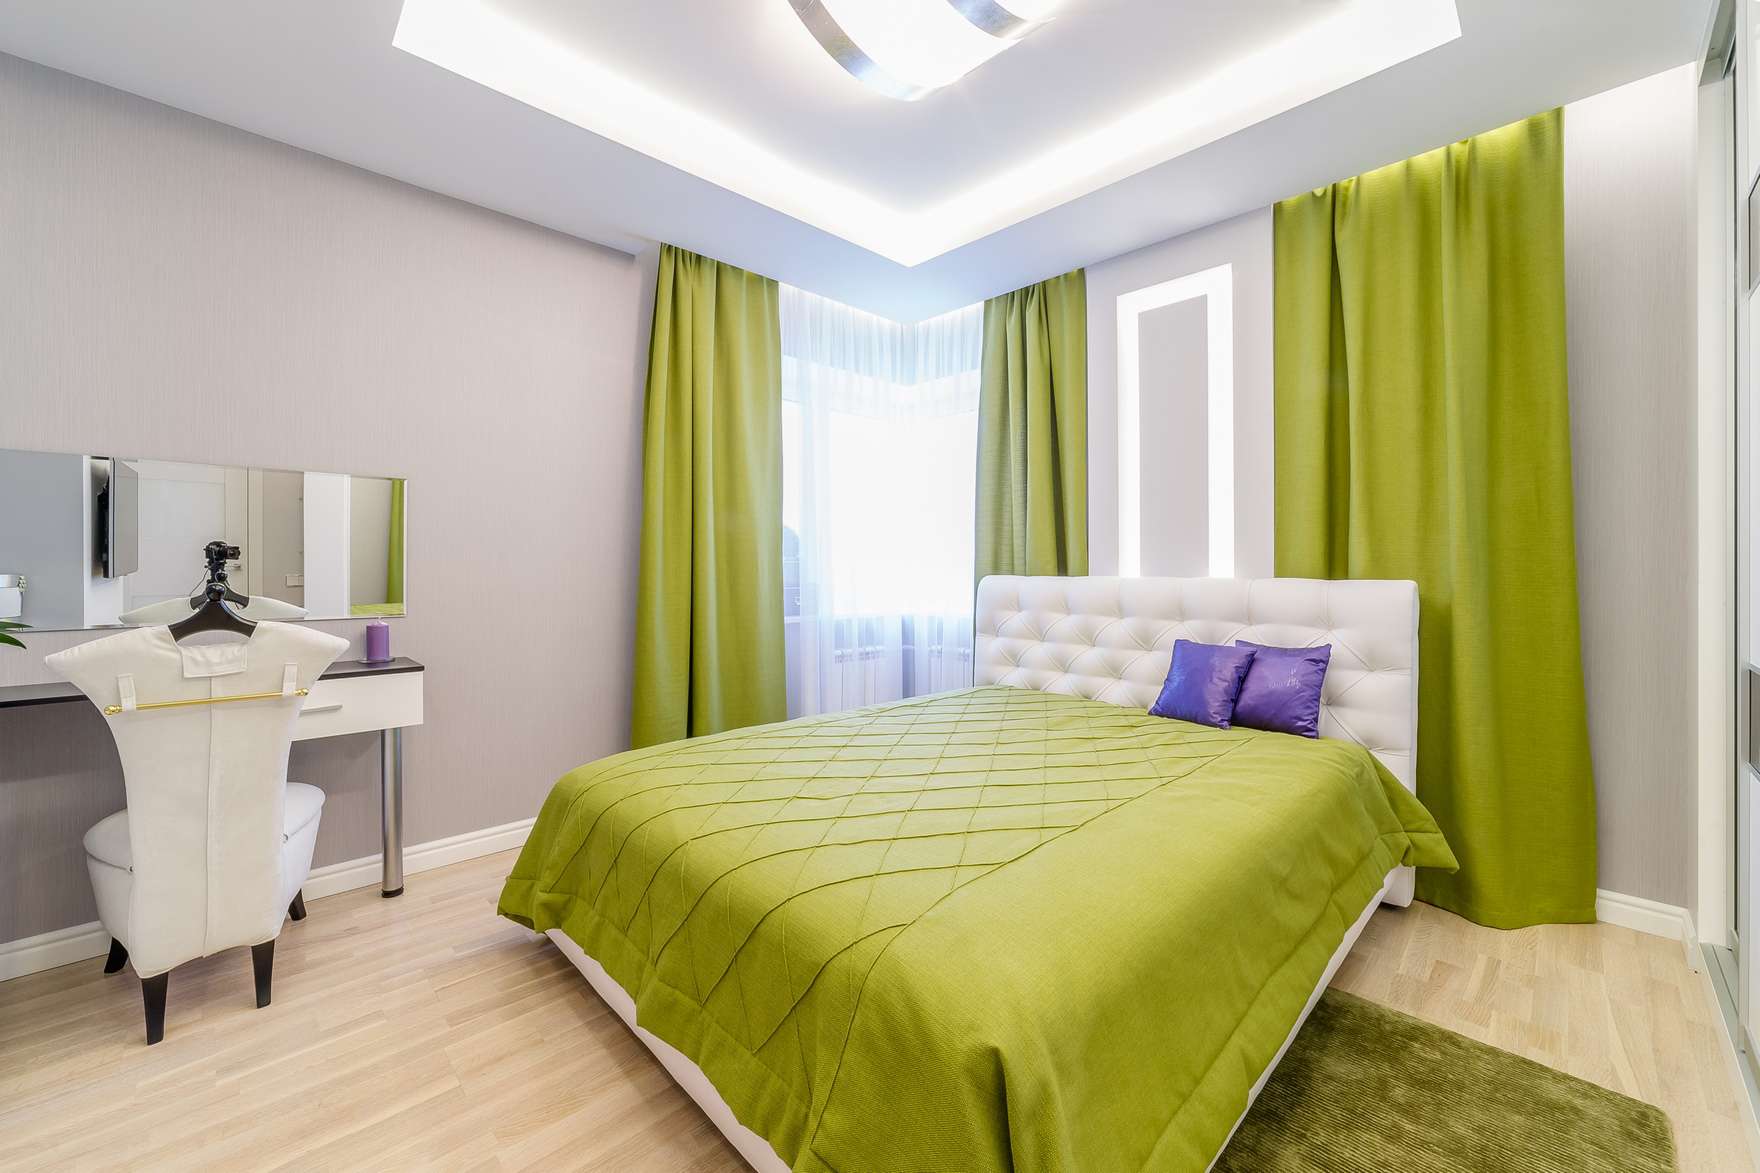 green bedroom ideas ideas